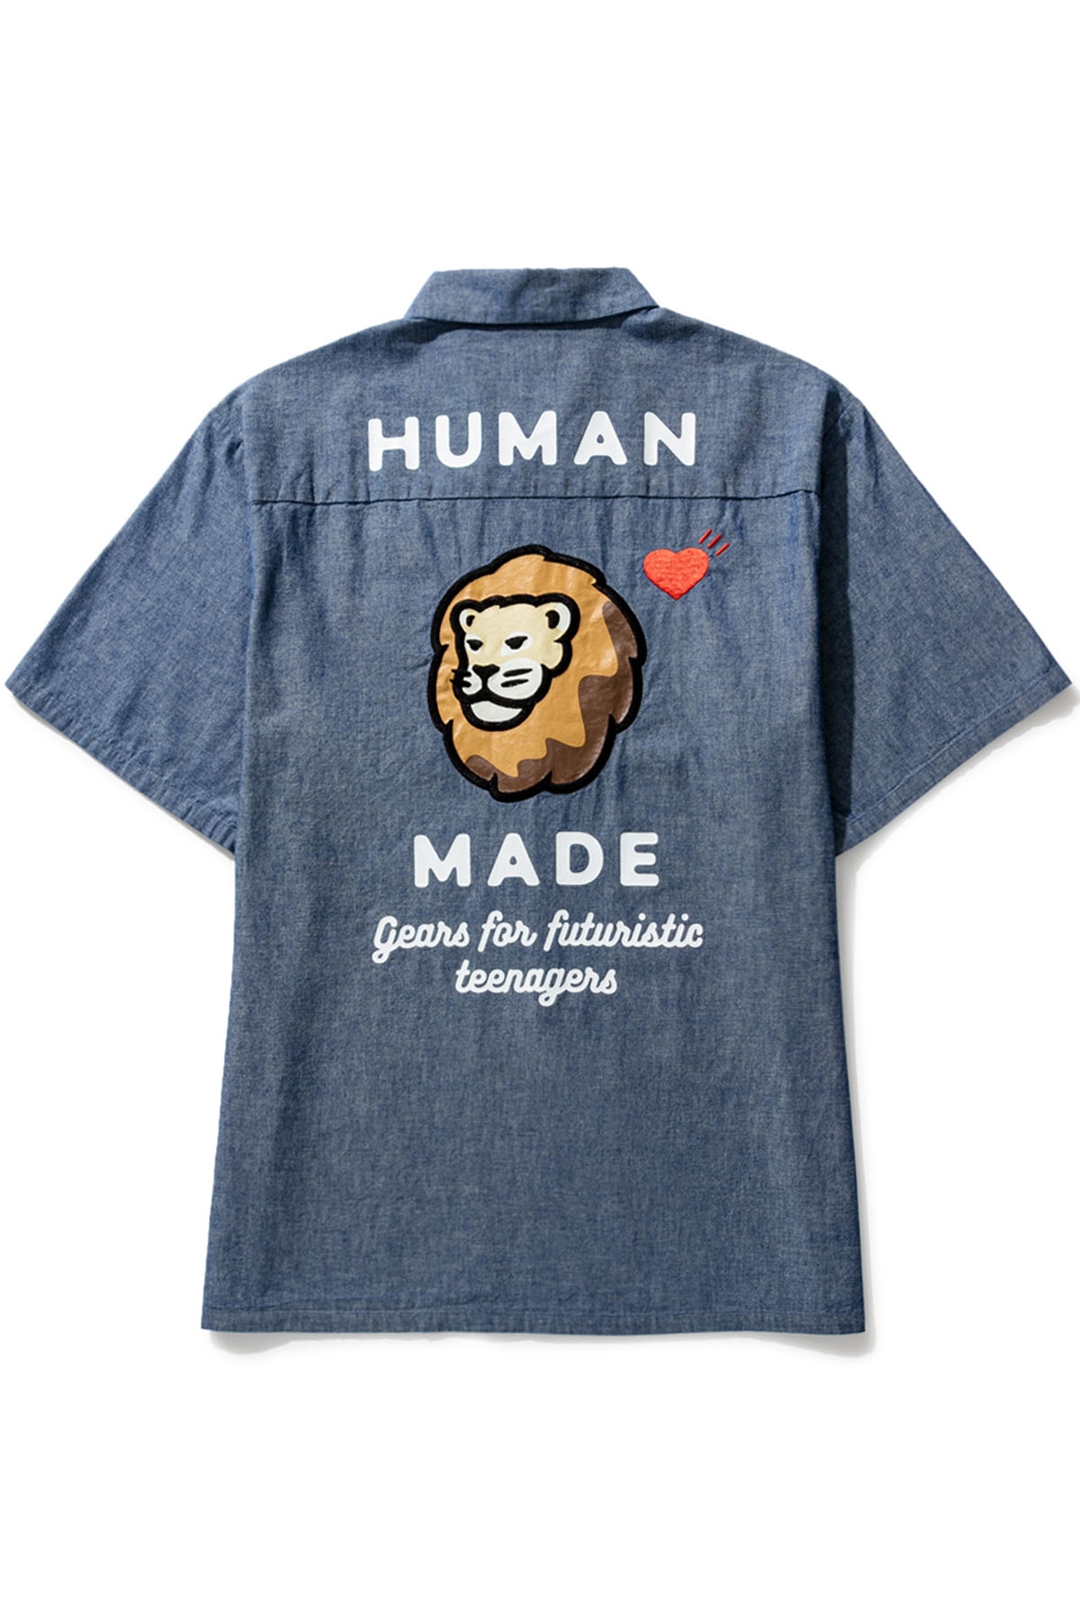 【海外 10/1 発売】HUMAN MADE × HBX ライオン・カプセルコレクション (ヒューマンメイド エイチビーエックス)